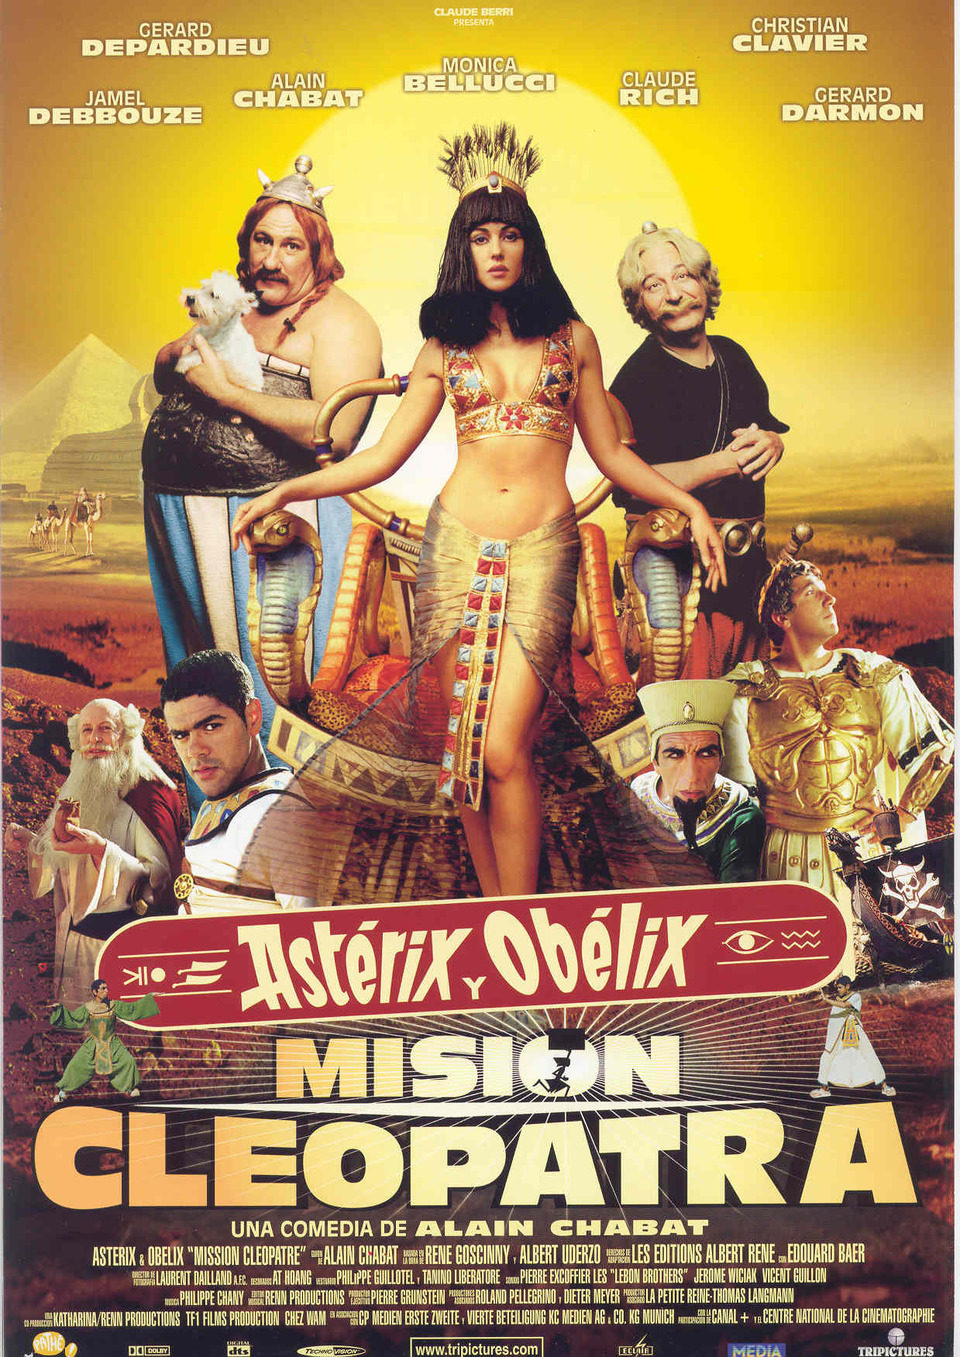 Cartel de Astérix y Obélix: Misión Cleopatra - Francia